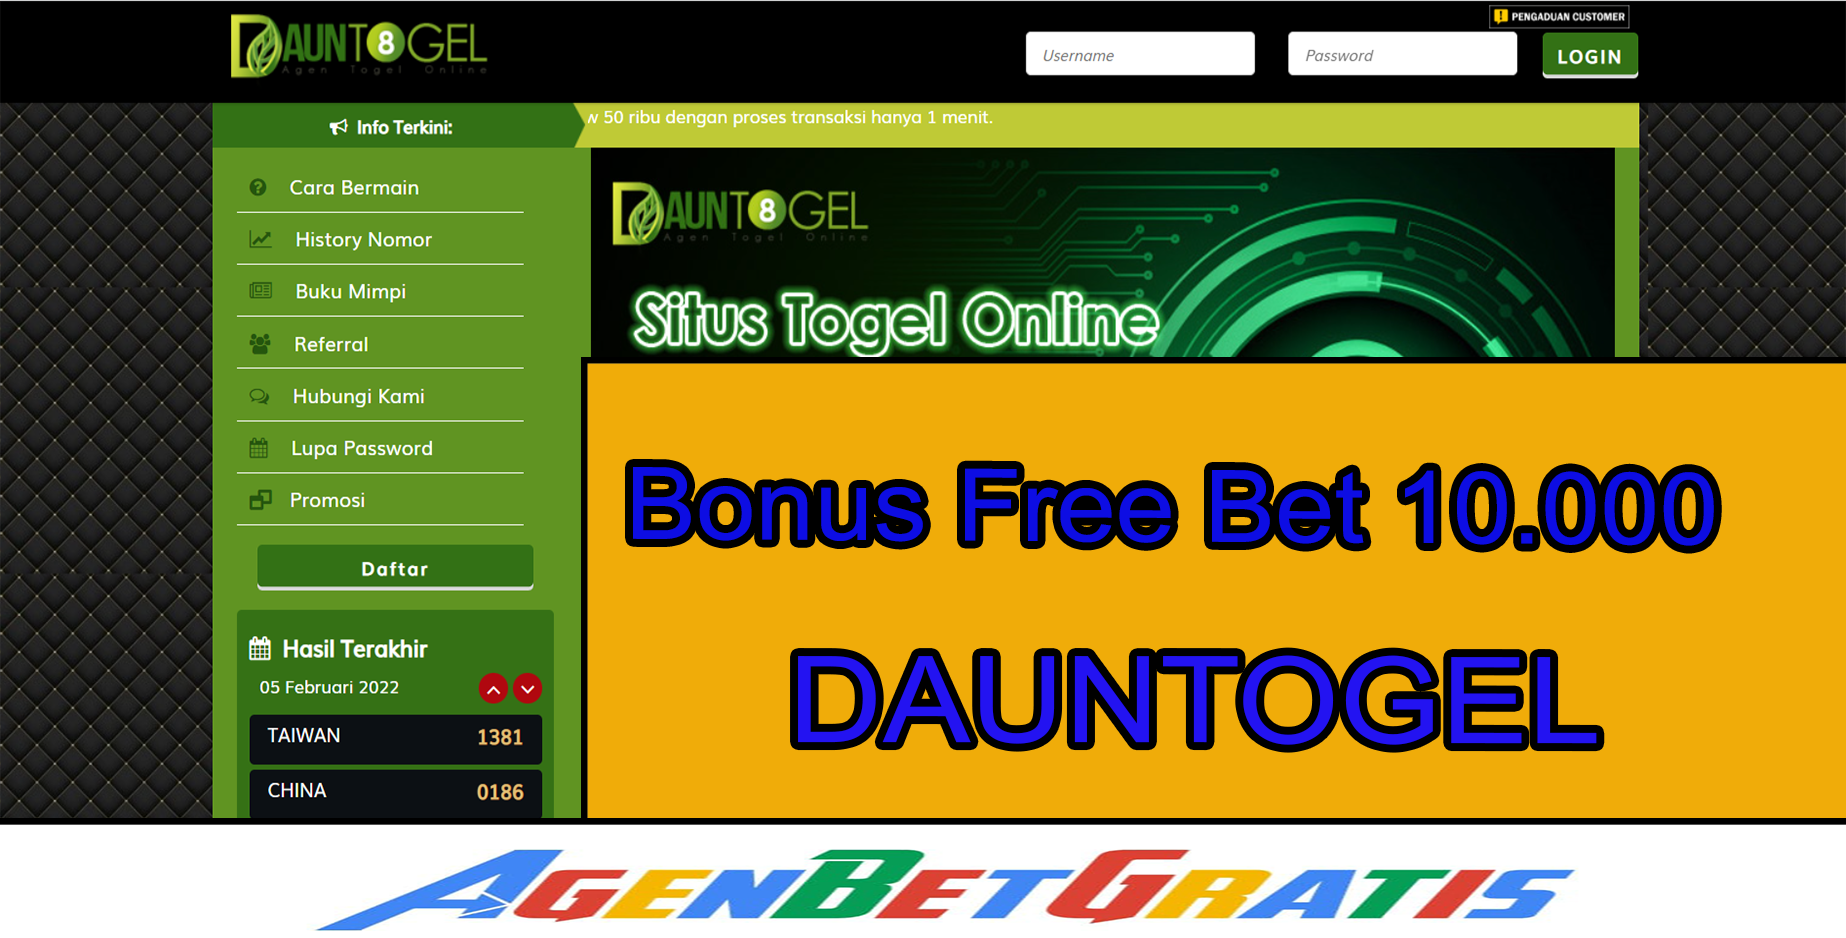 DAUNTOGEL - Bonus FreeBet 10.000